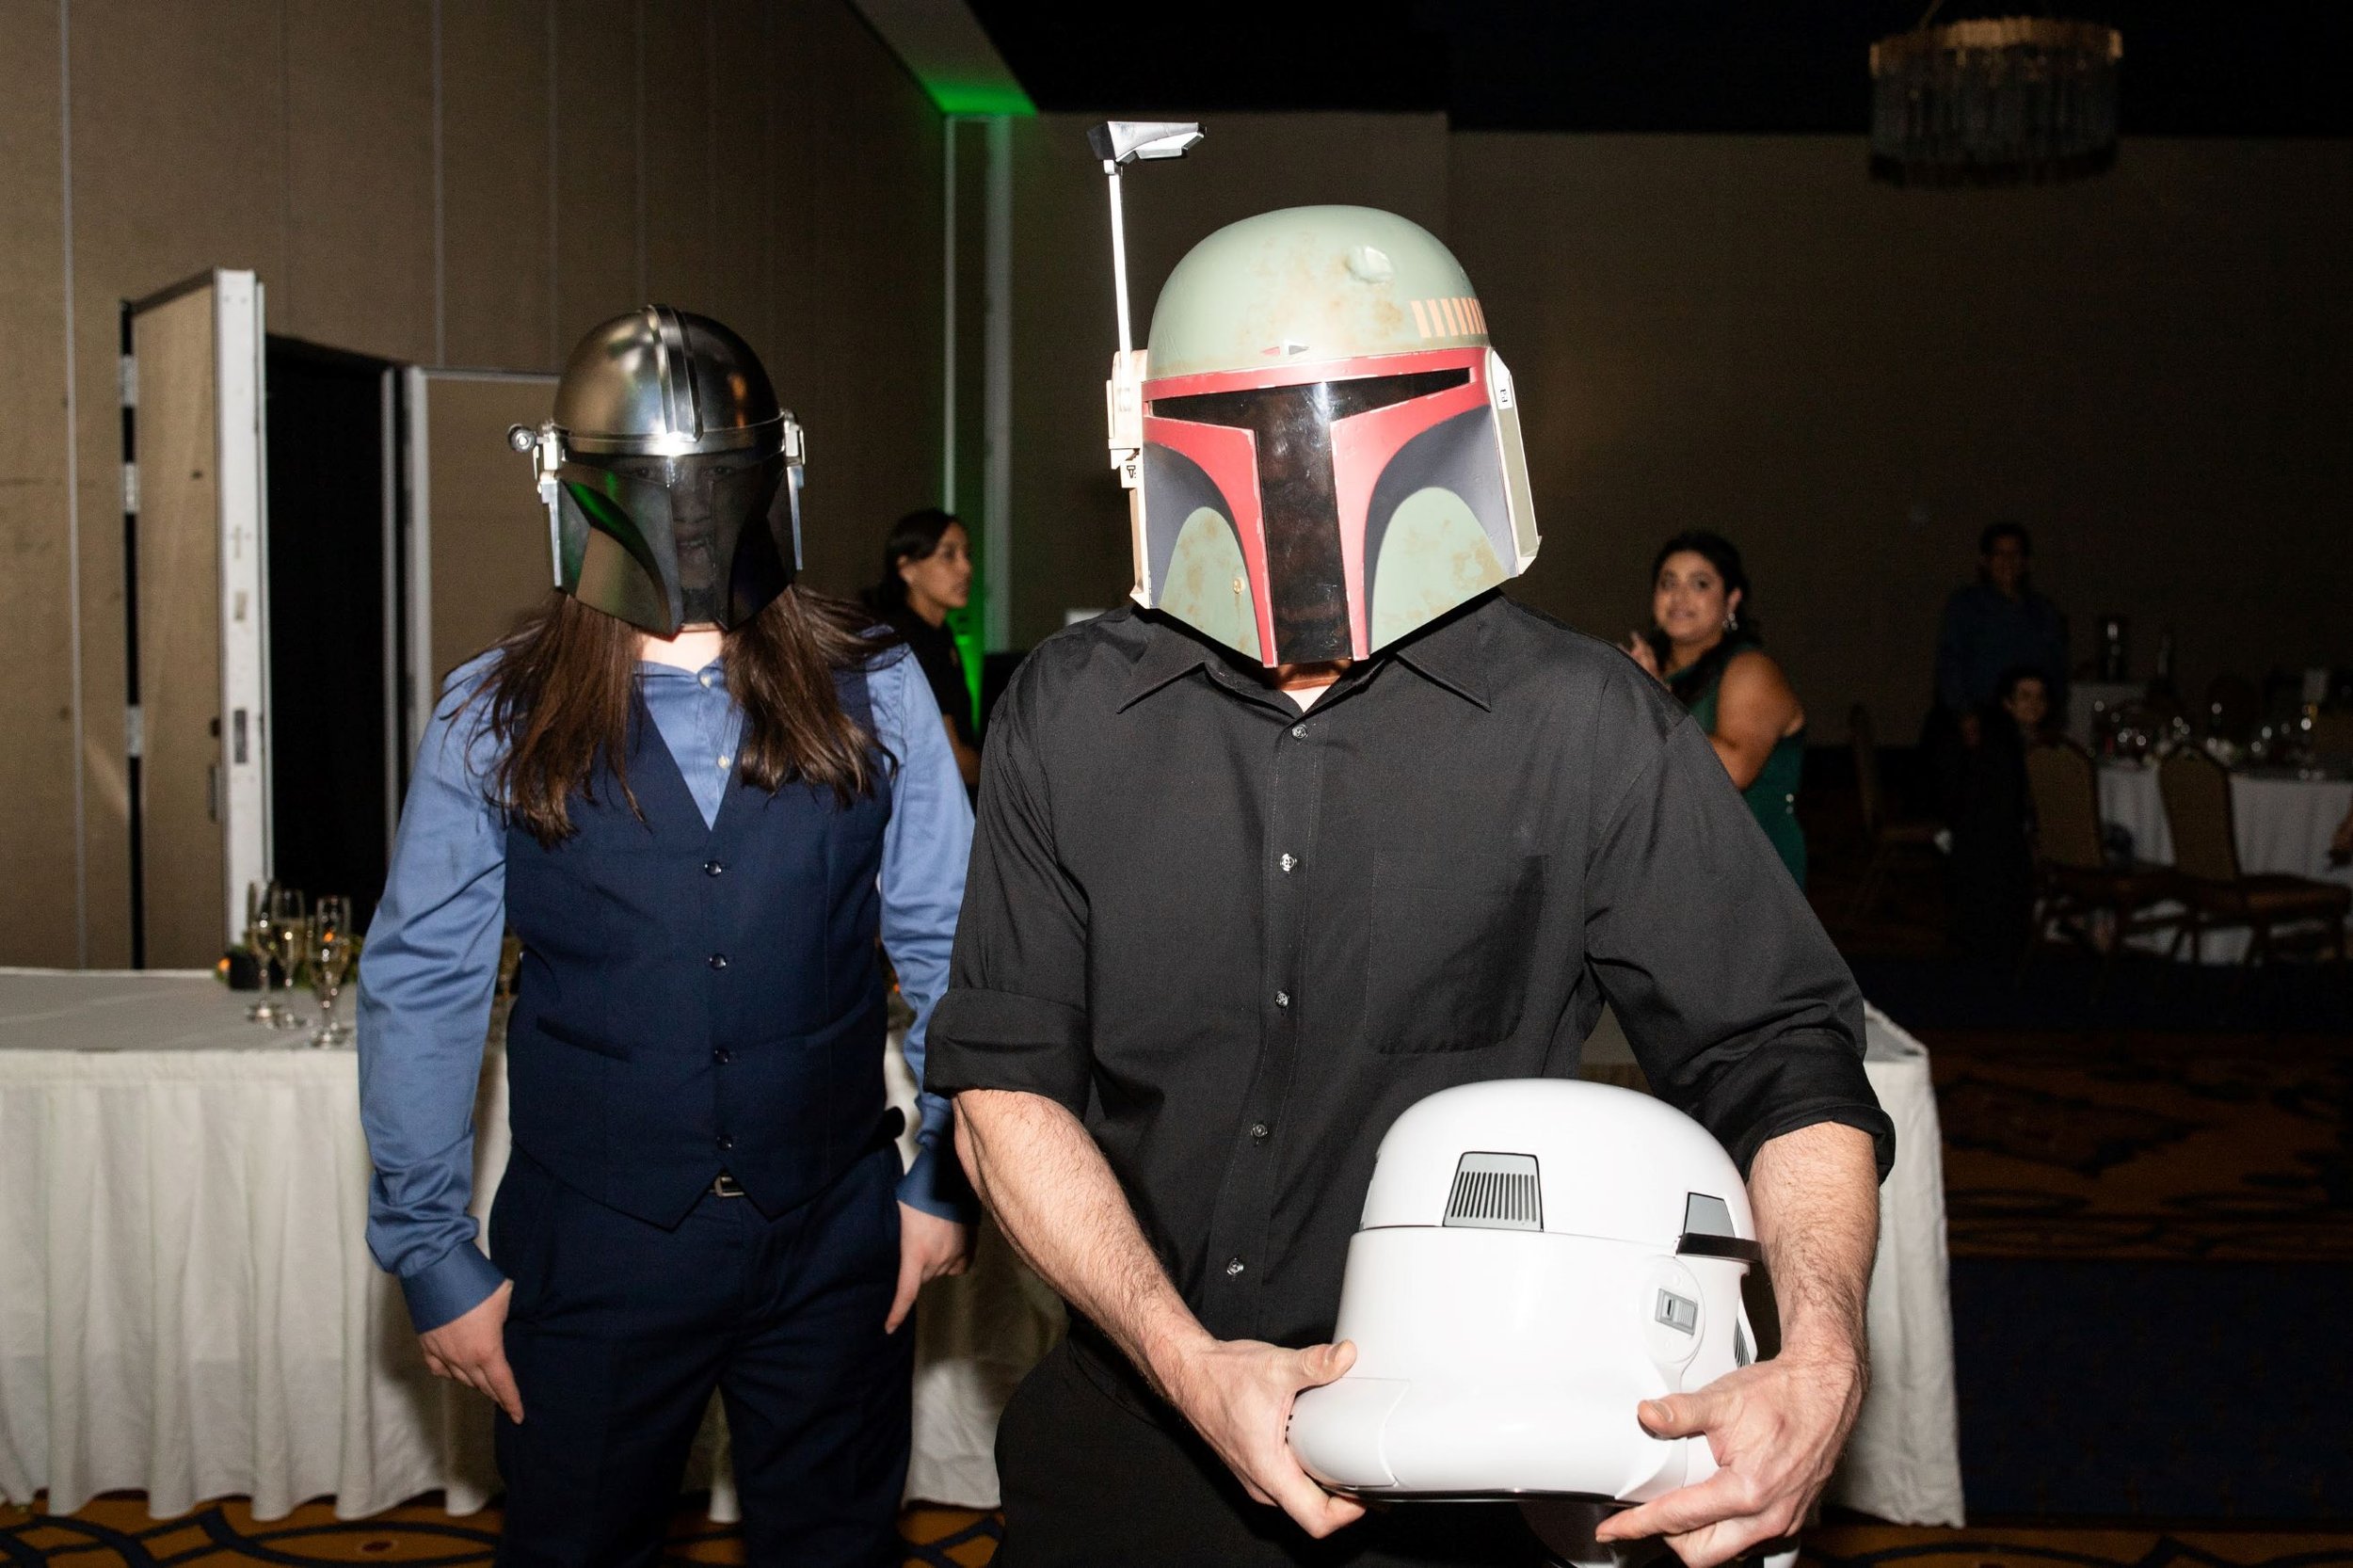 Star Wars Helmets at wedding.jpg